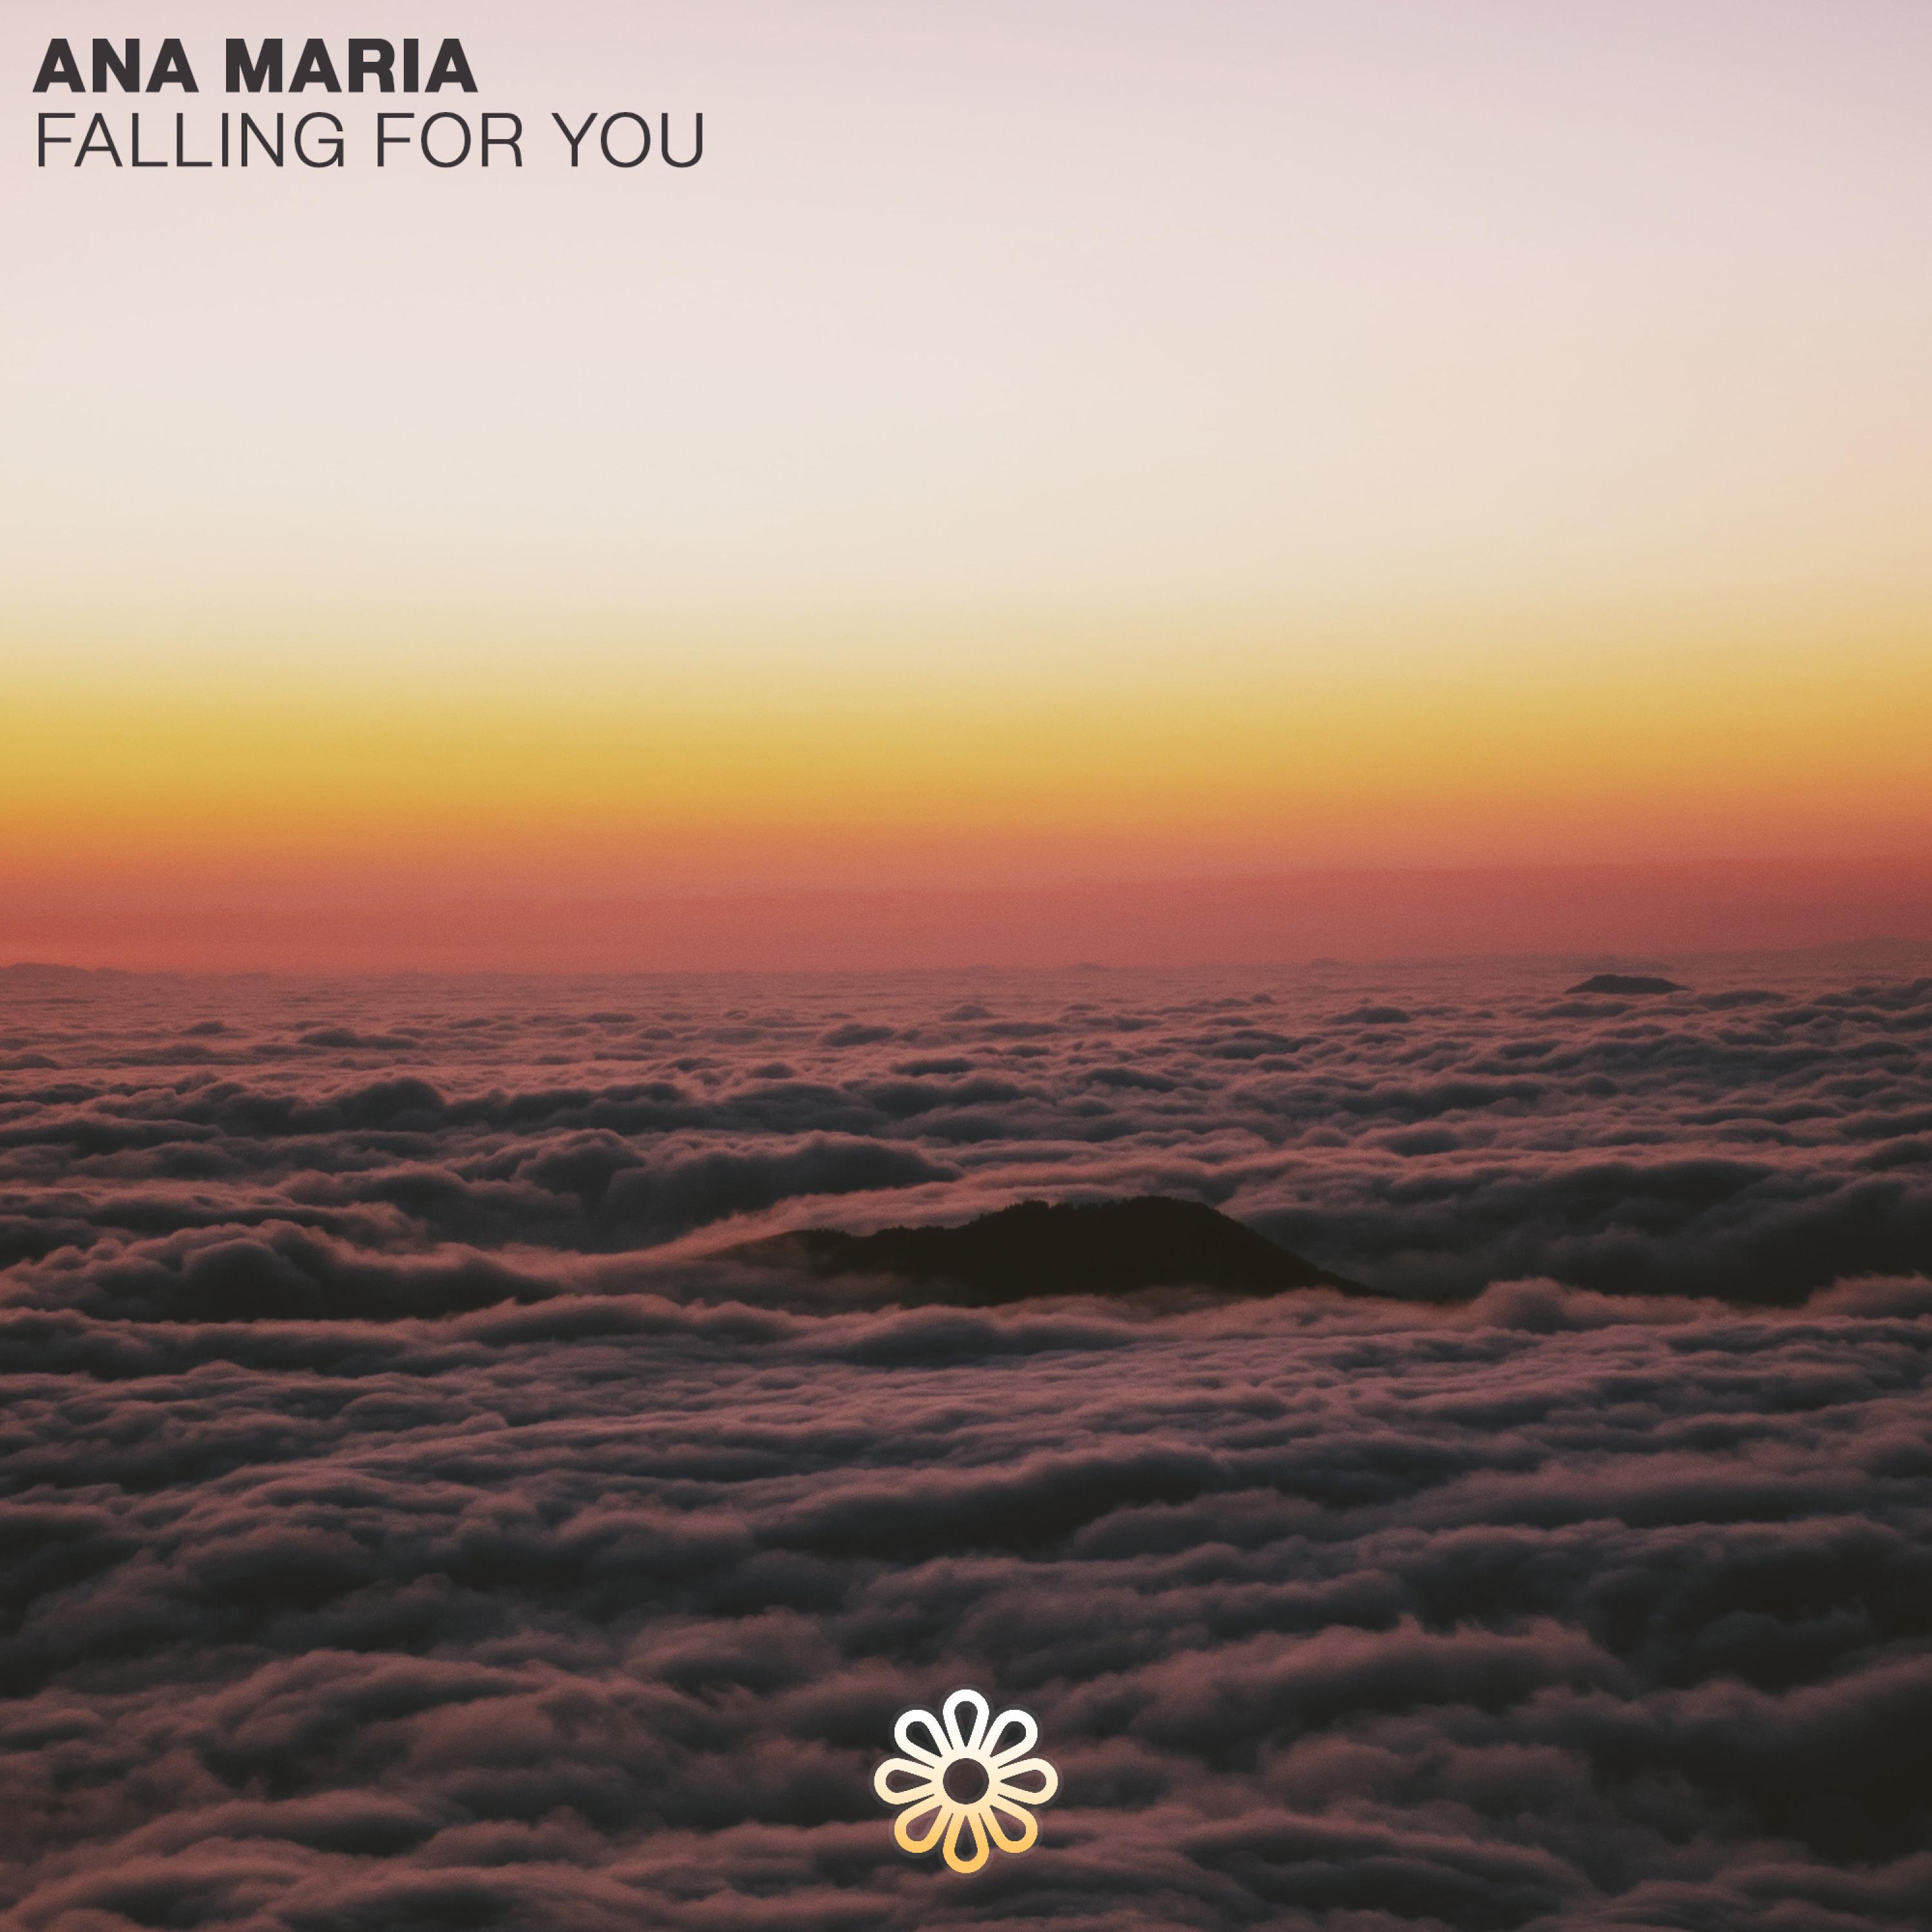 Ana Maria - You and I